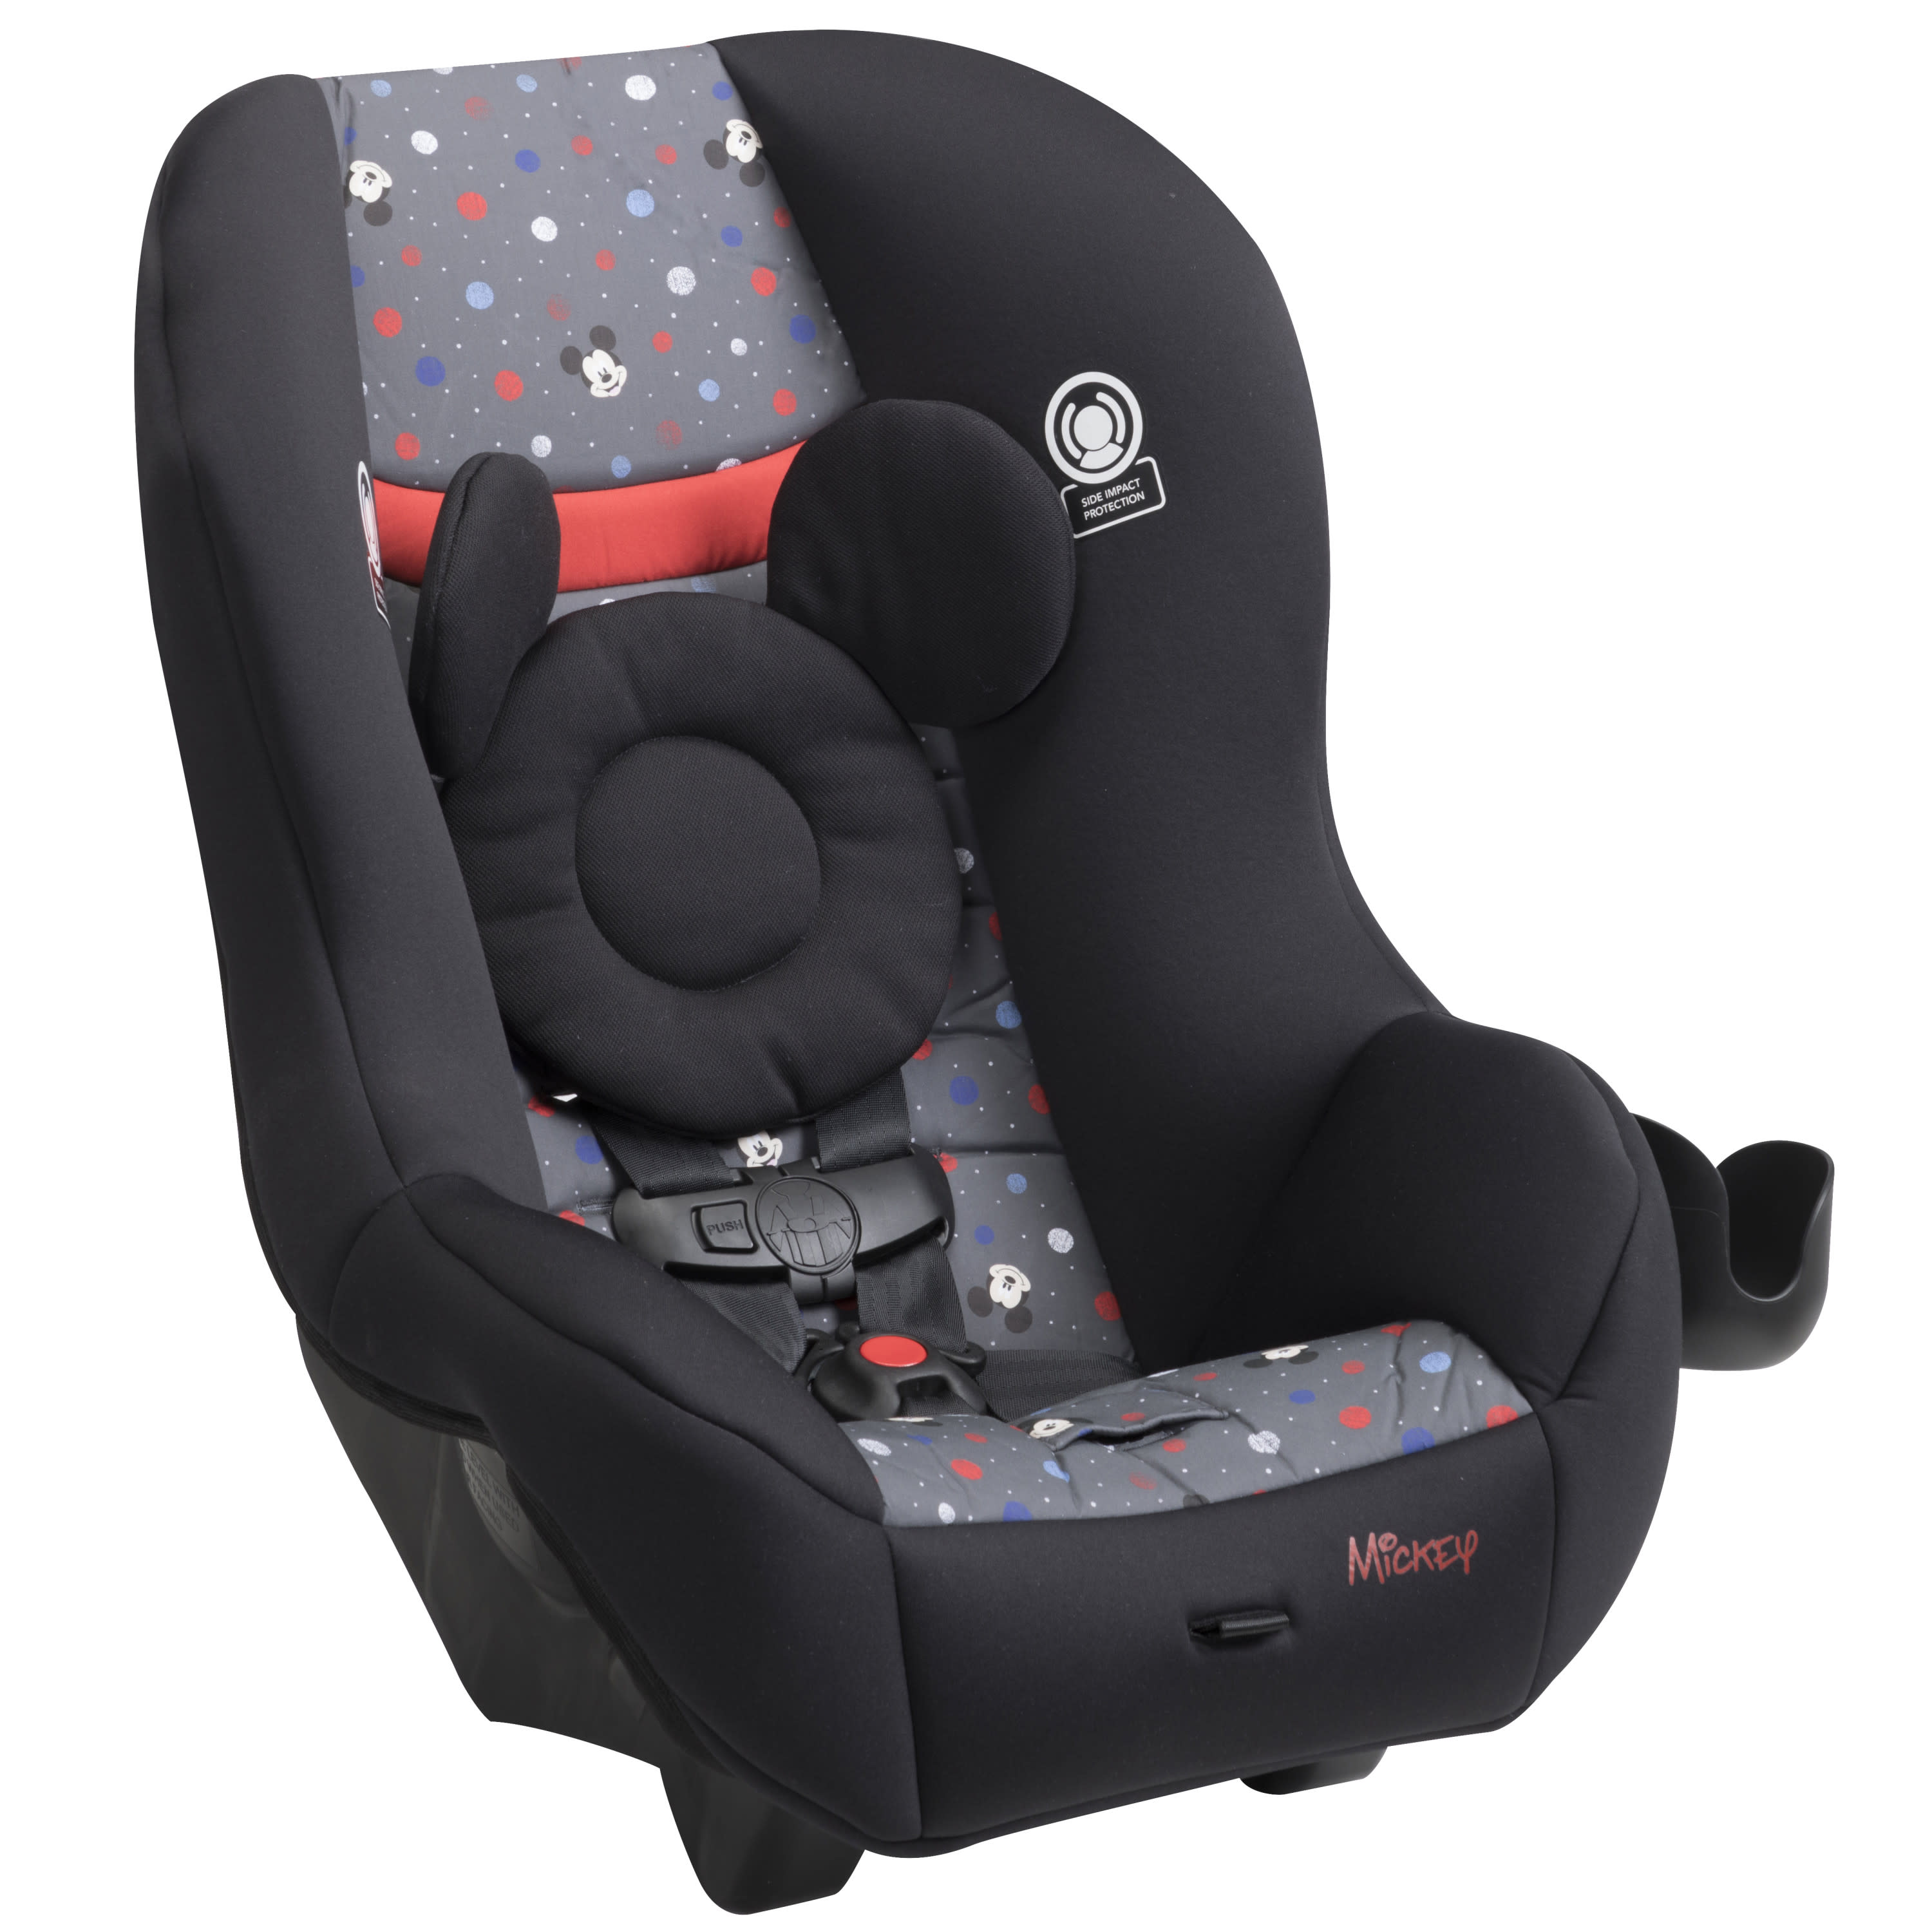 Disney Baby Scenera NEXT Luxe Convertible Car Seat, Mickey Indigo Dreams - image 4 of 16